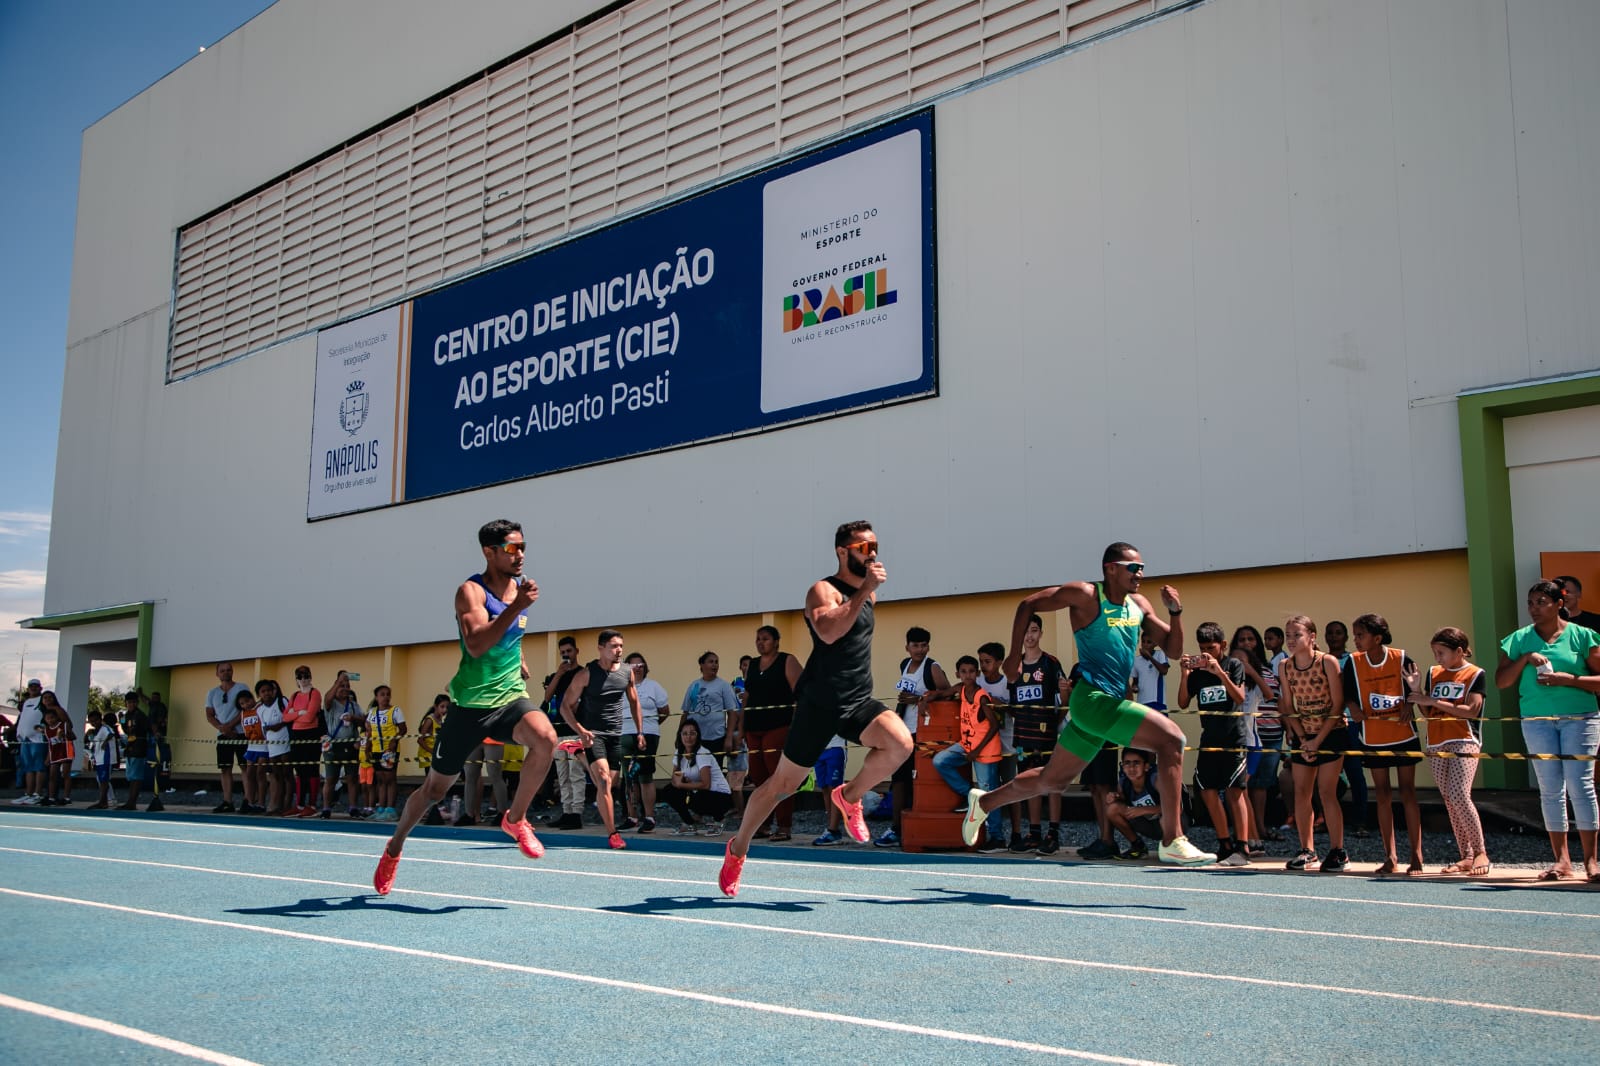 Centro de Inauguração ao Esporte é inaugurado com festa para crianças e atletas de Anápolis